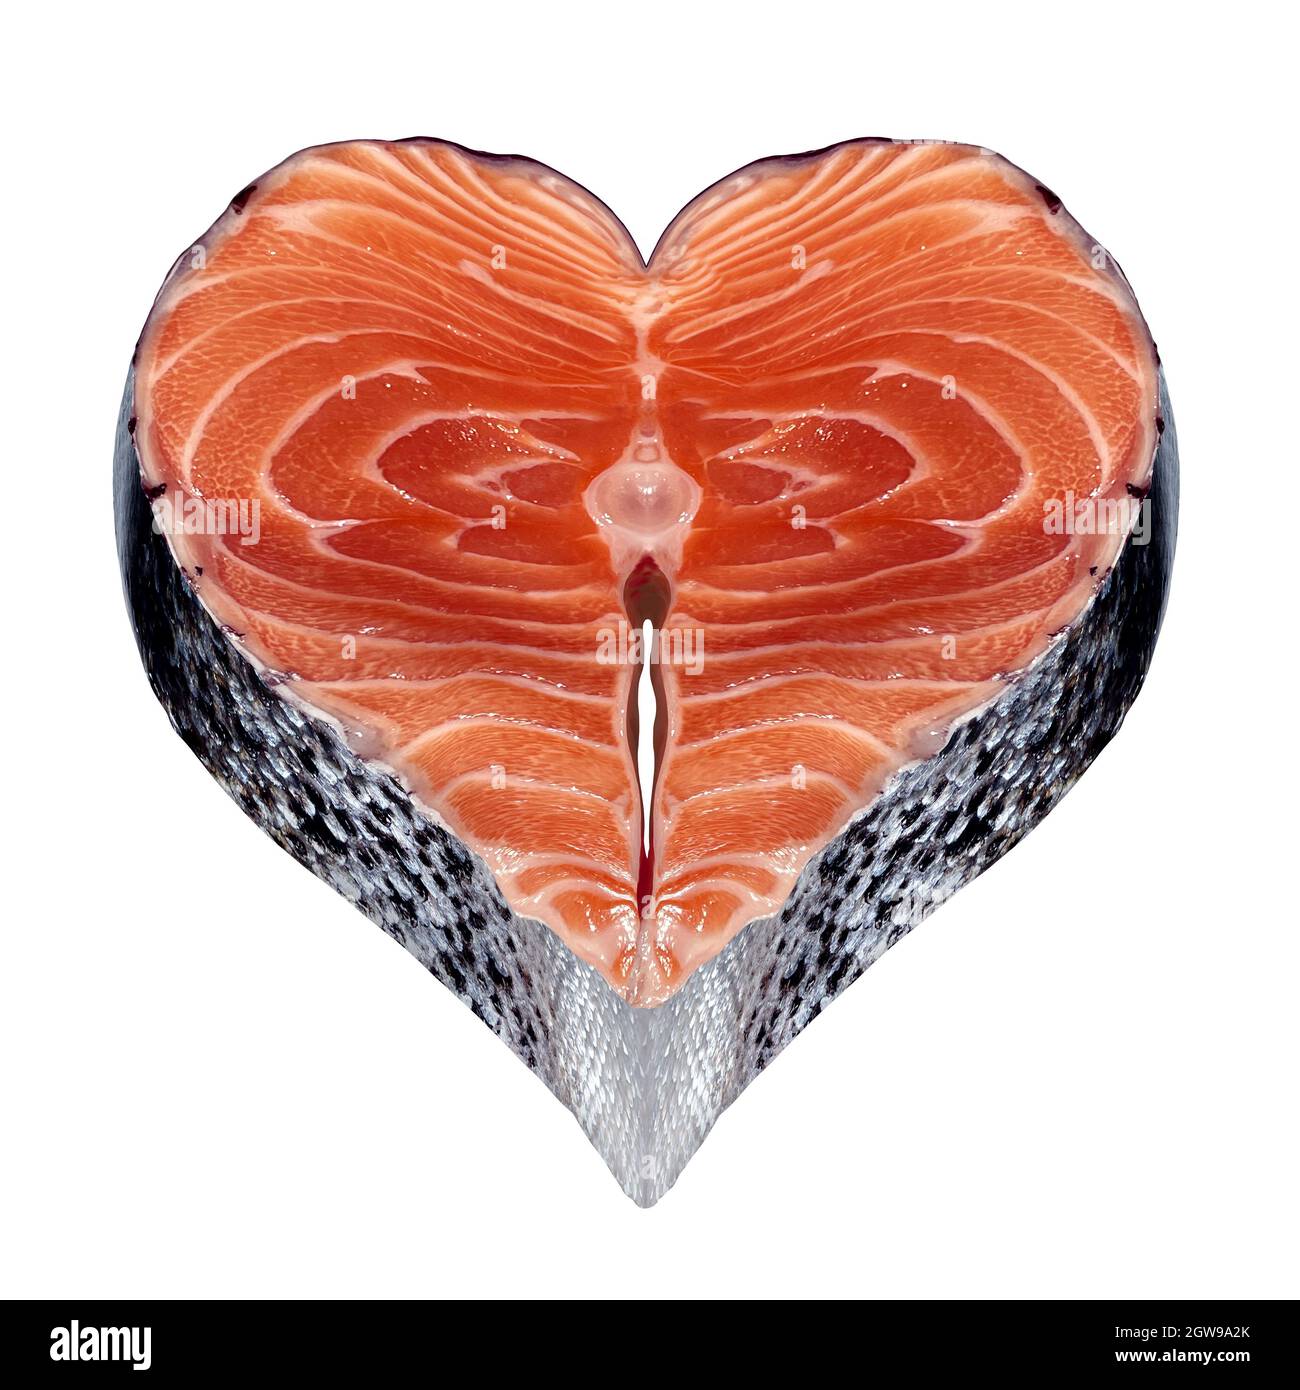 Gesundes Fischsymbol als frischer Fisch mit einem Lachssteak in Herzform als Symbol für eine gesunde Omega-3-Nahrungsquelle. Stockfoto